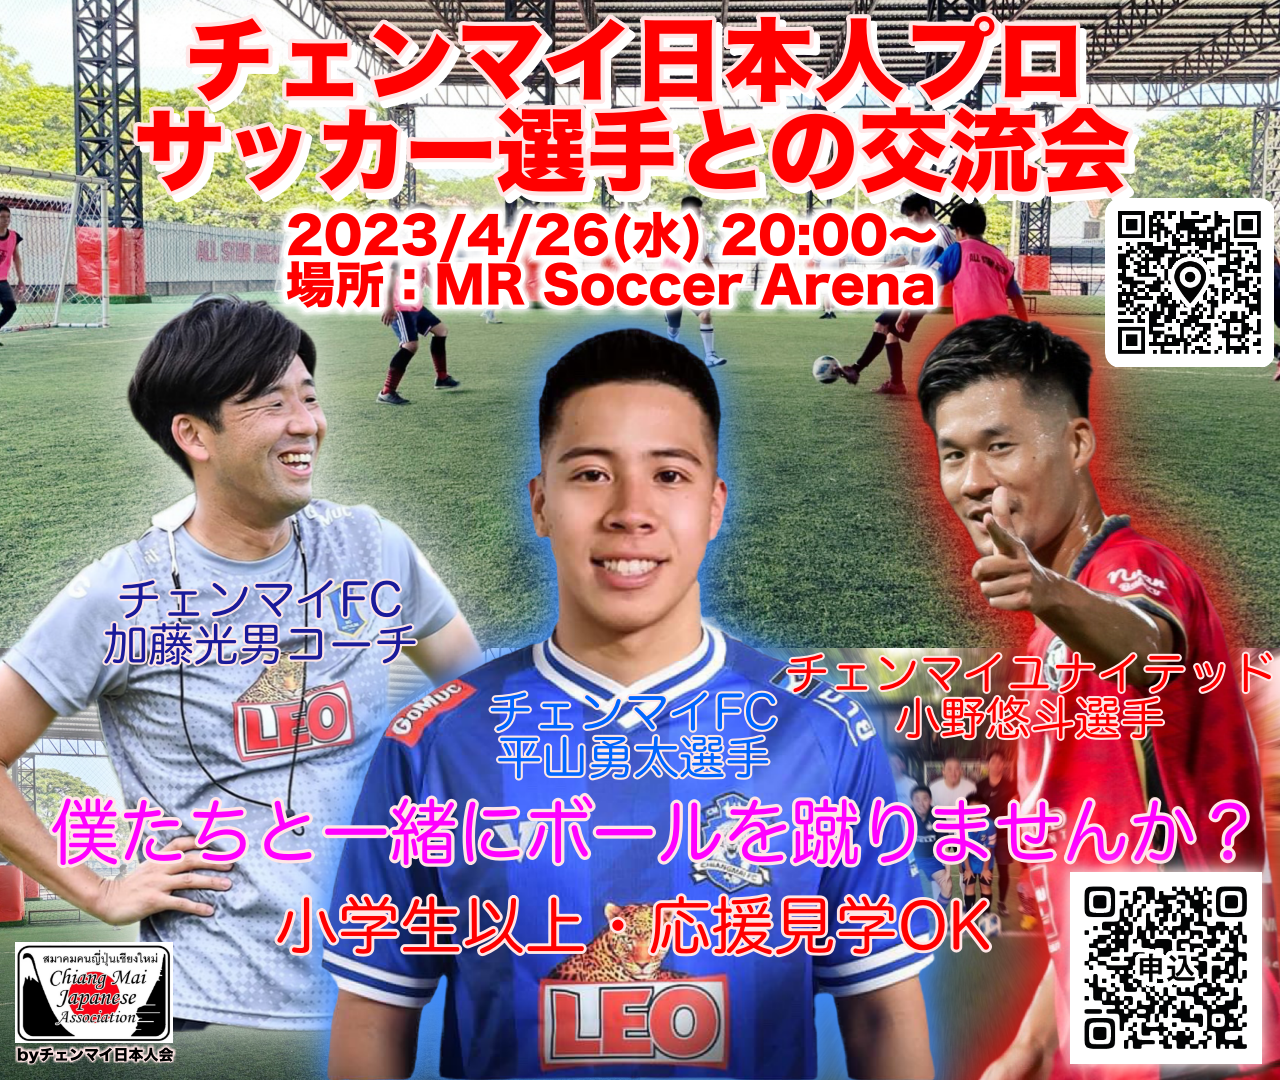 チェンマイ日本人プロサッカーコーチ・選手との交流会